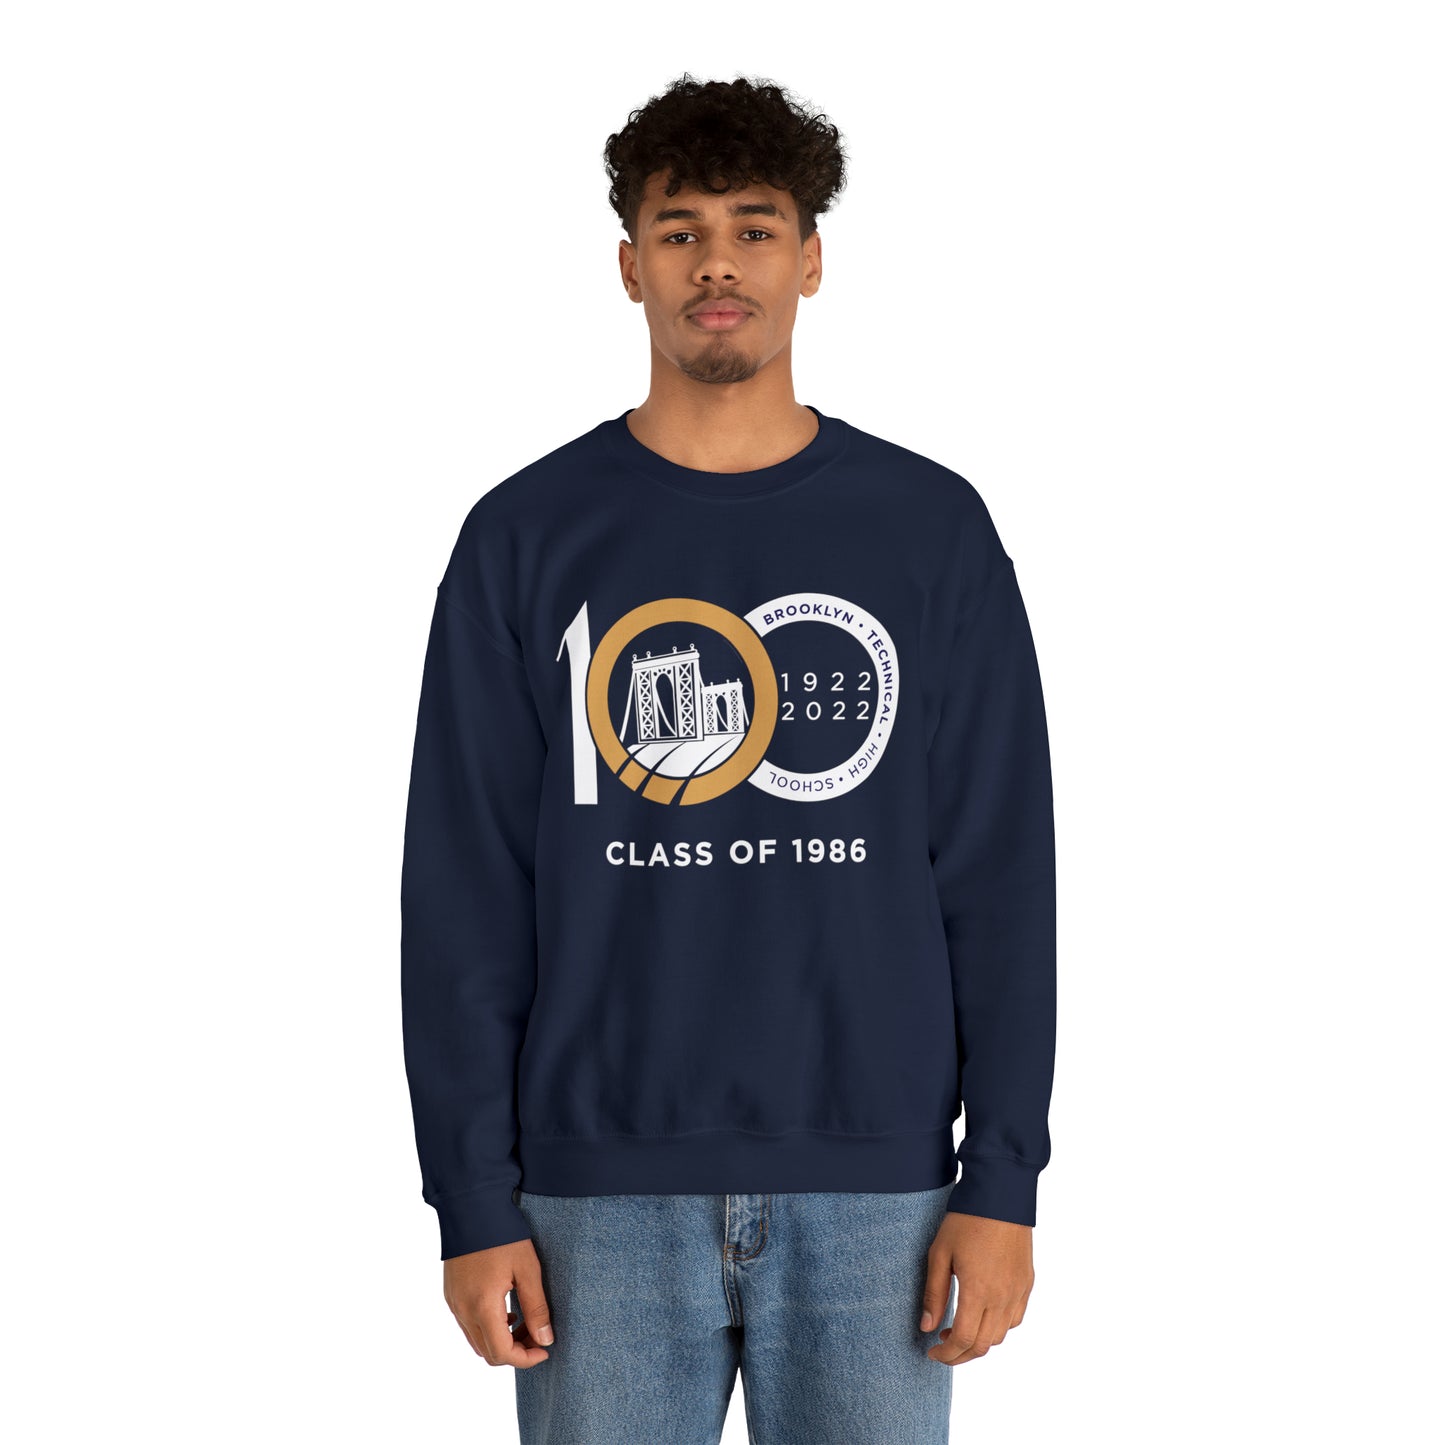 Centennial - Men's Heavy Blend Crewneck Sweatshirt - Class Of 1986